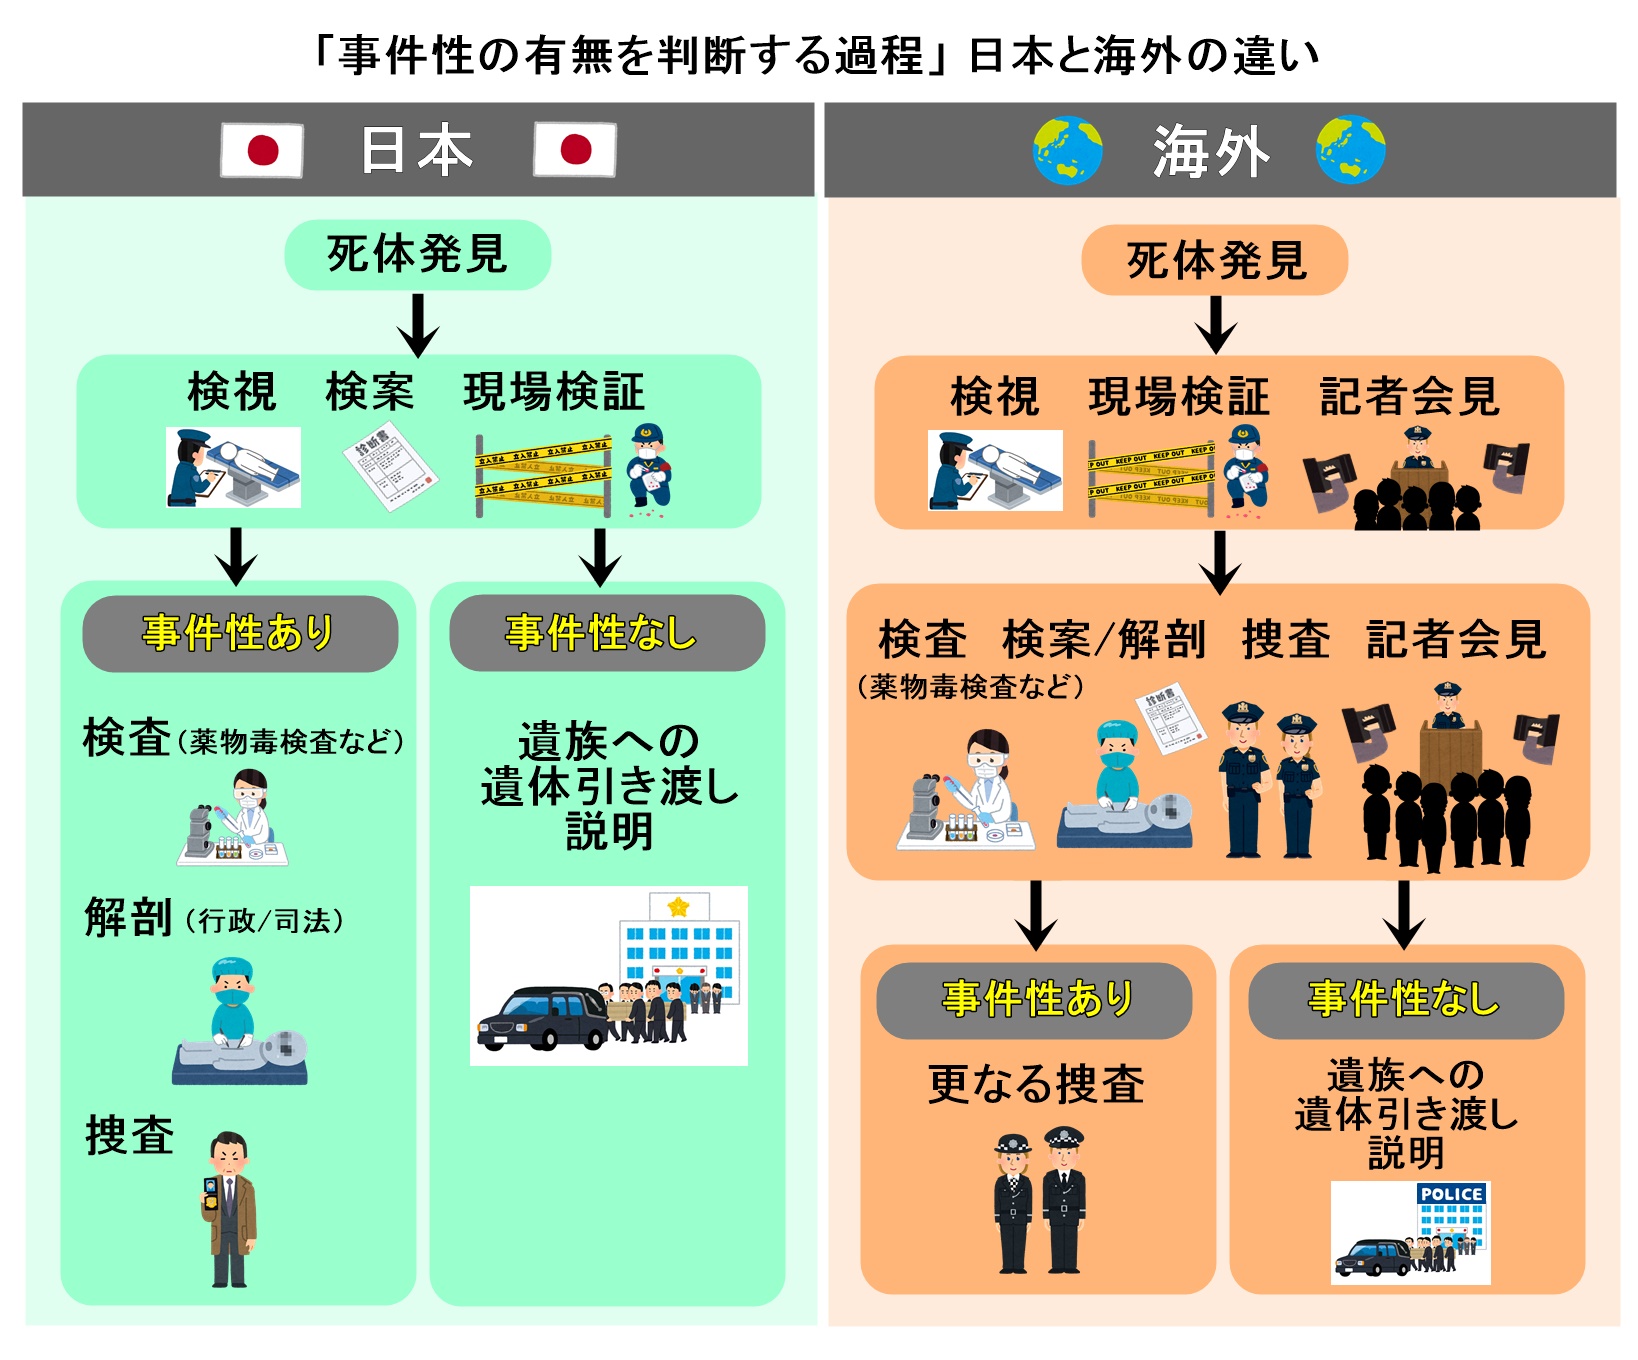 「事件性の有無を判断する過程」 日本と海外の違い